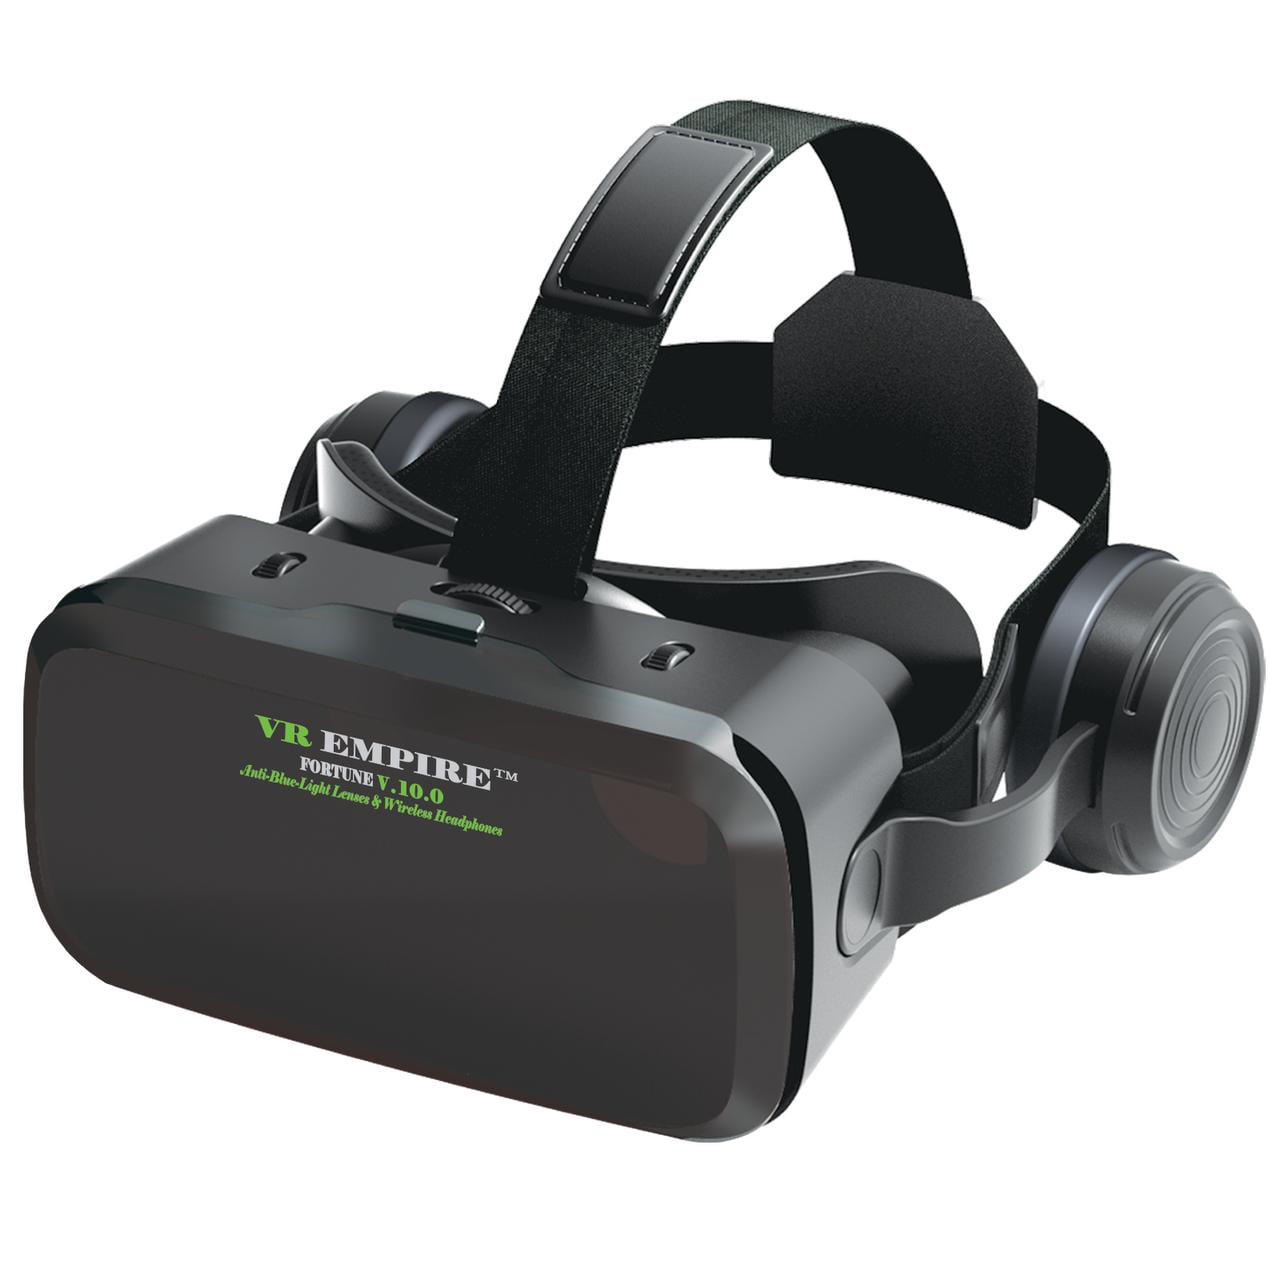  VR Headset Auriculares de realidad virtual Gafas 3D con 120 °  FOV, lentes anti-luz azul, auriculares estéreo, para todos los teléfonos  inteligentes con longitud inferior a 6.3 pulgadas como iPhone y 